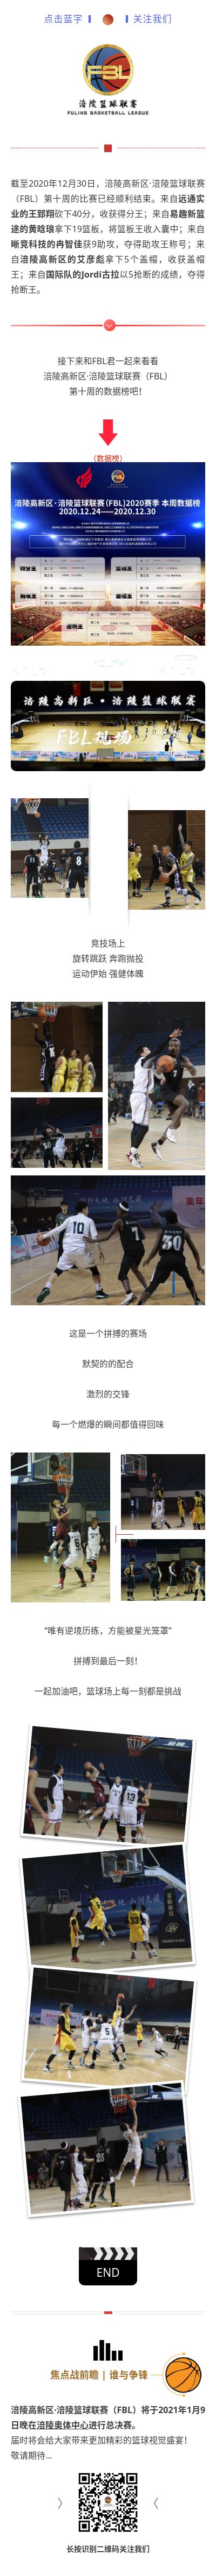 涪陵高新区·涪陵篮球联赛（FBL）2020赛季周报（12.28-12.30）